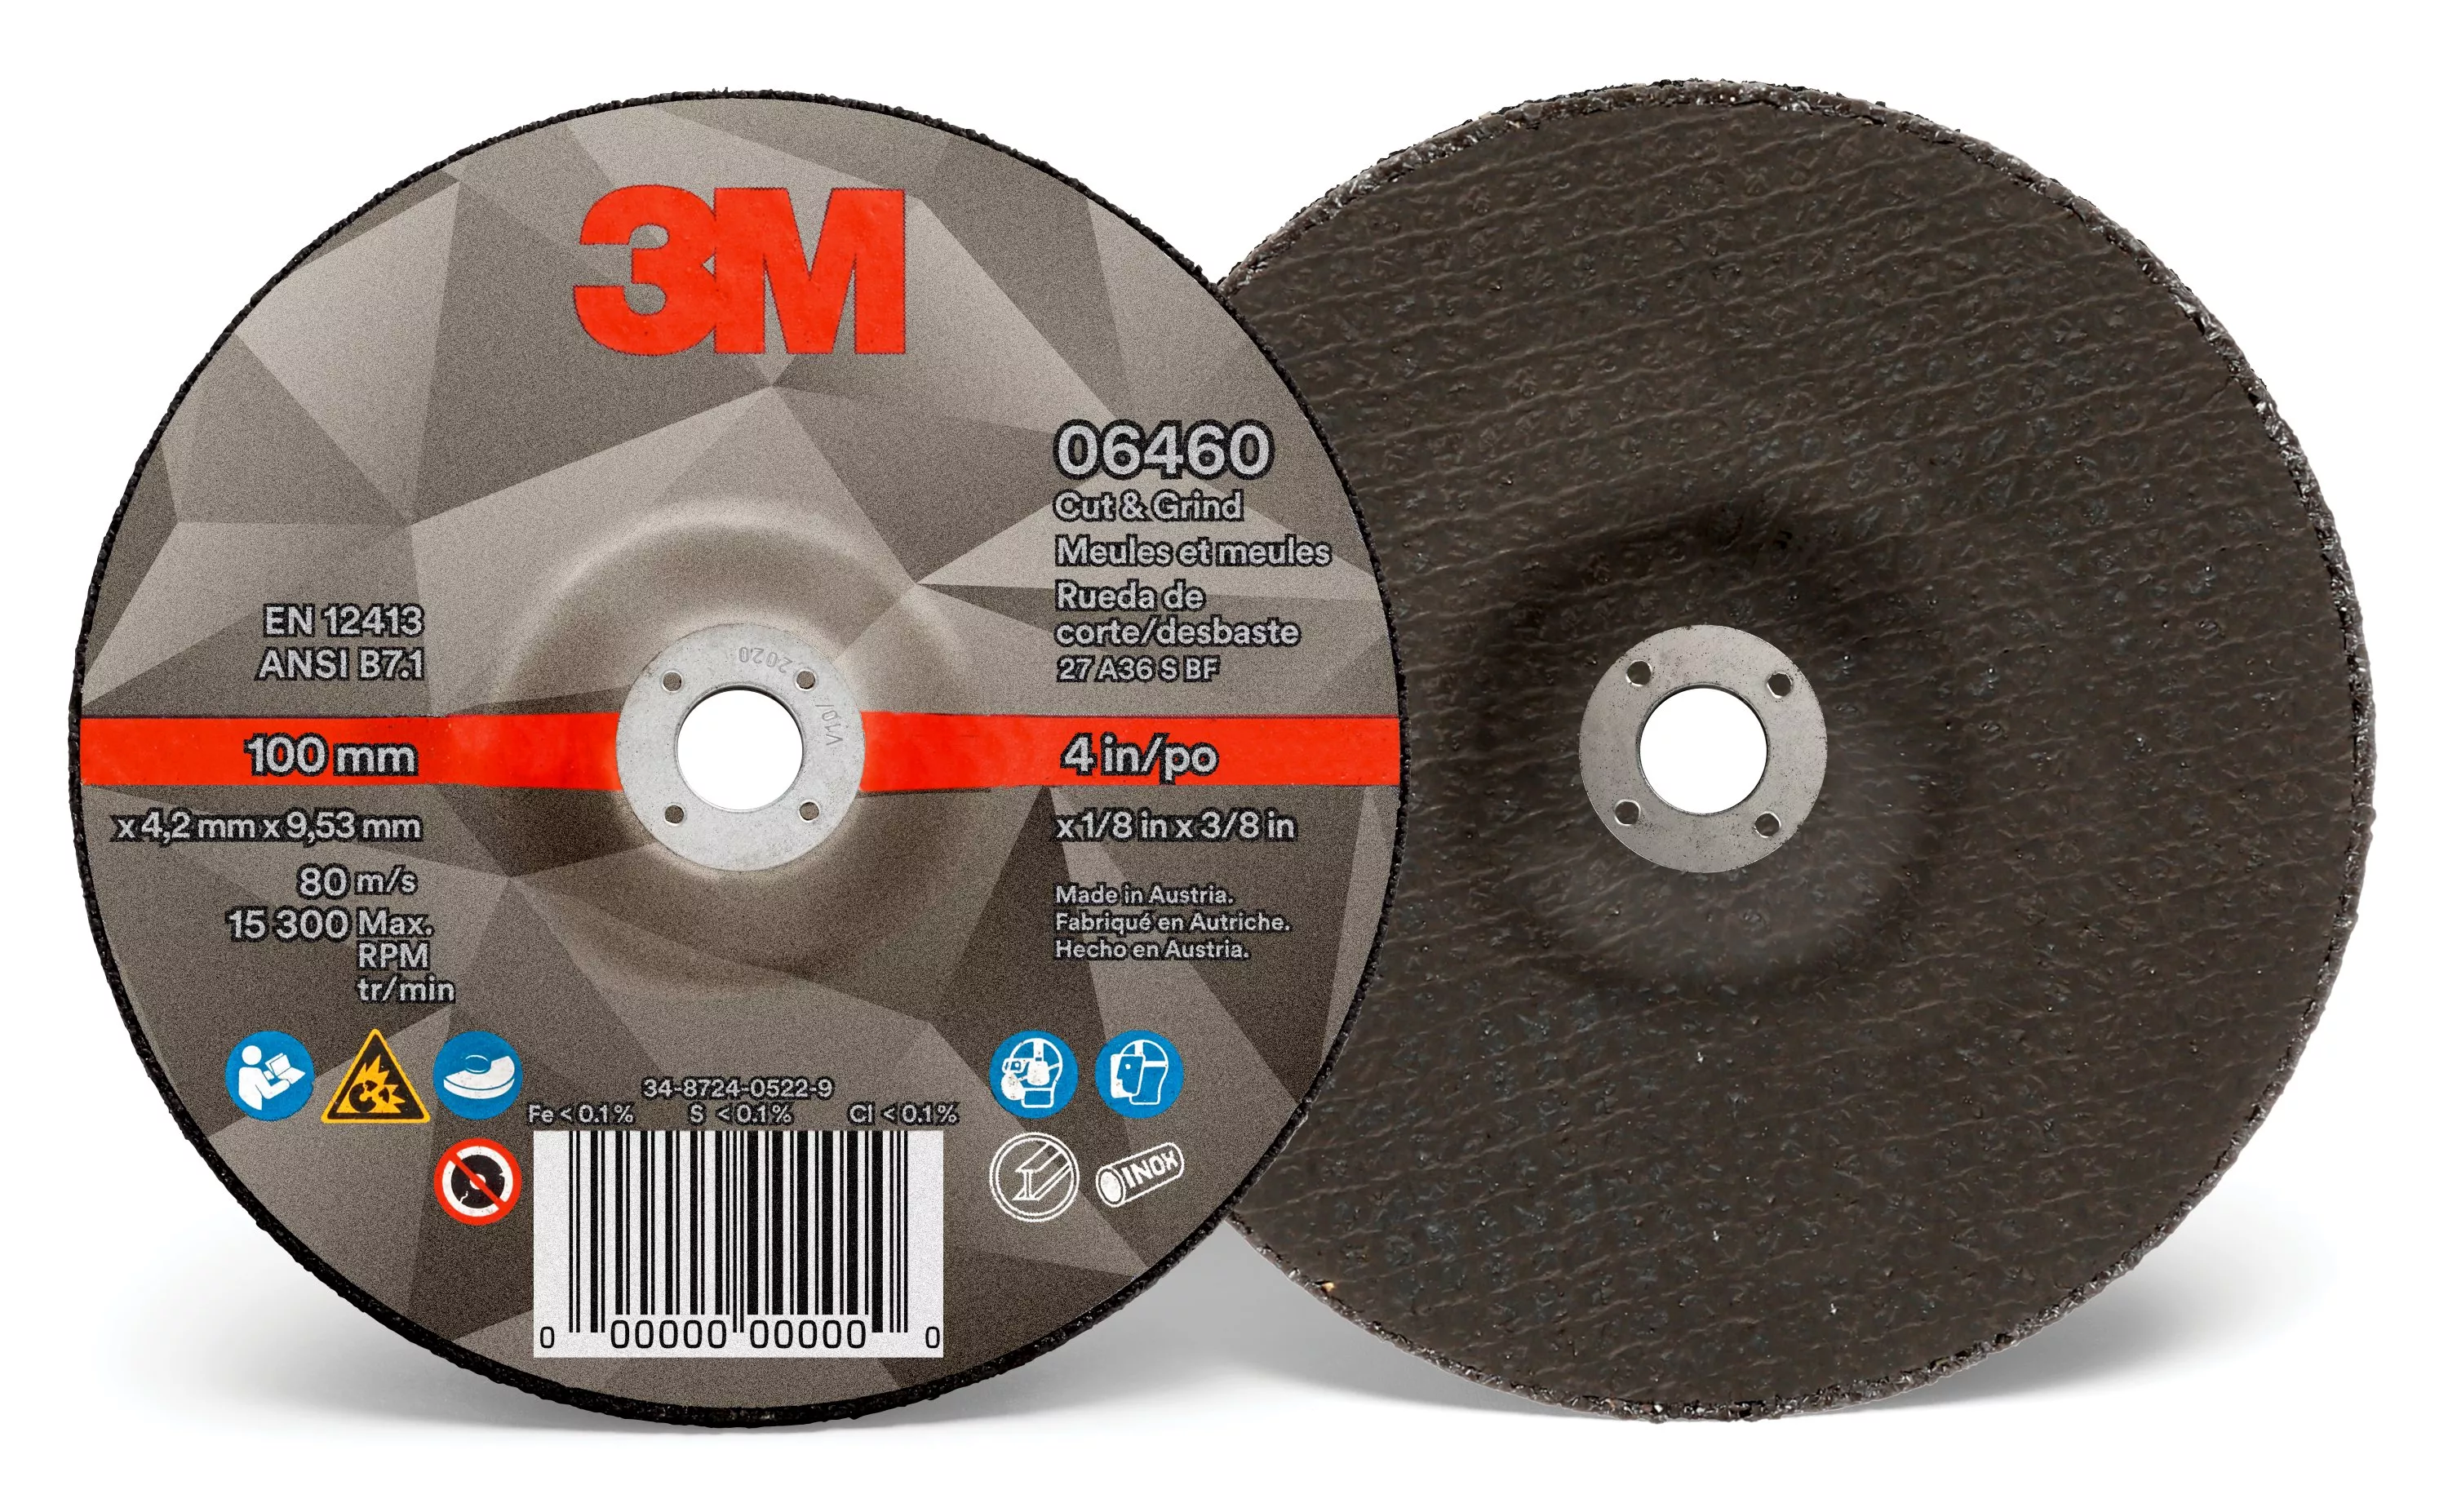 SKU 7100213972 | 3M™ Cut & Grind Wheel